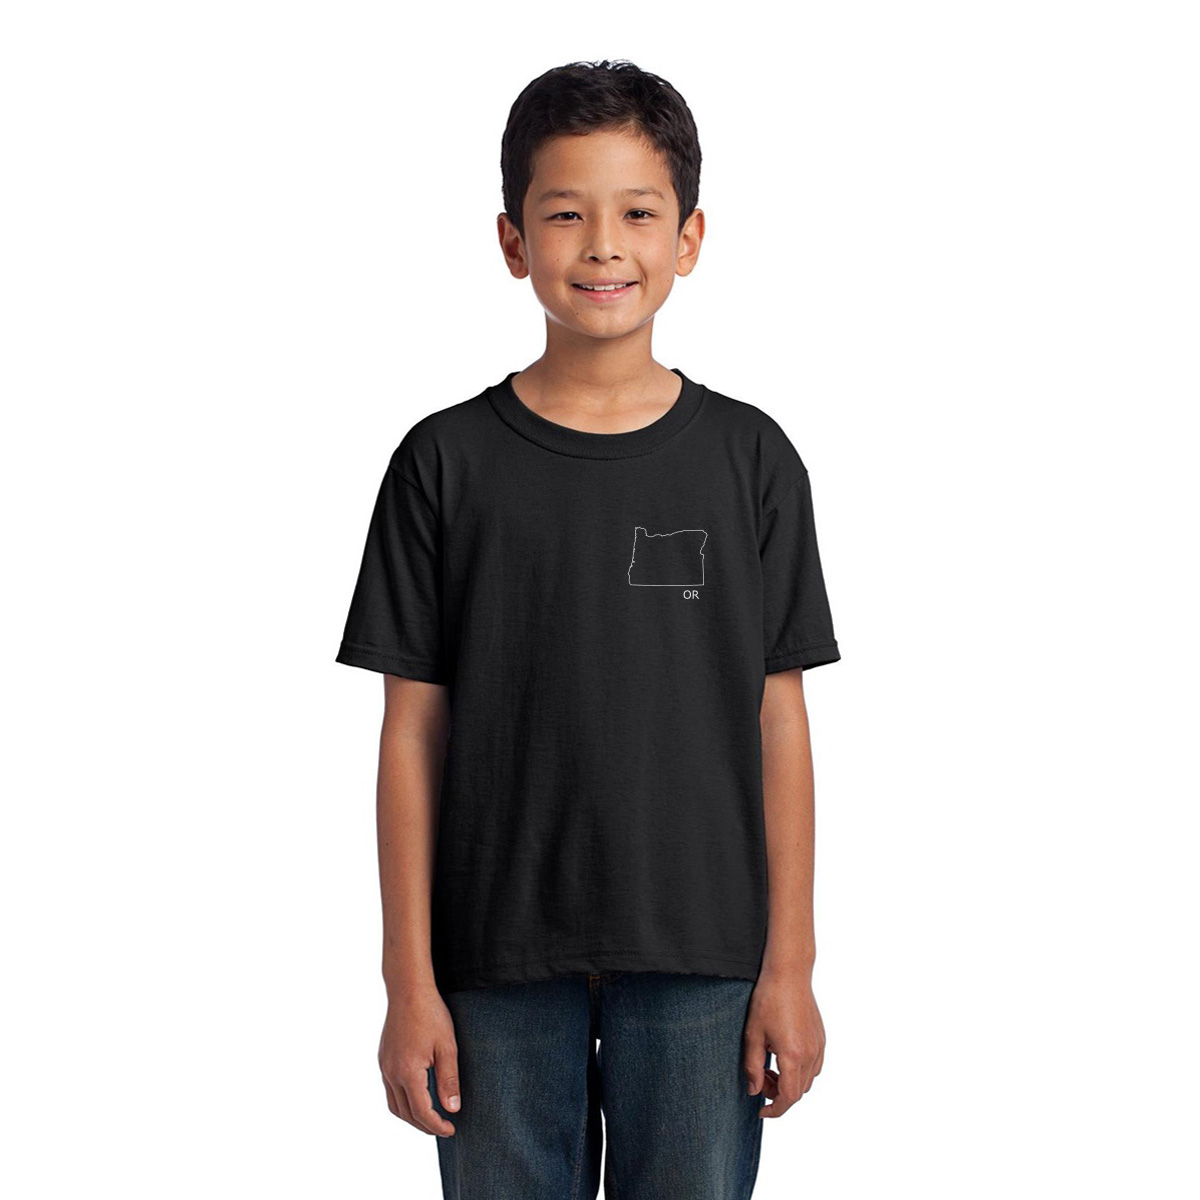 Oregon Kids T-shirt | Black